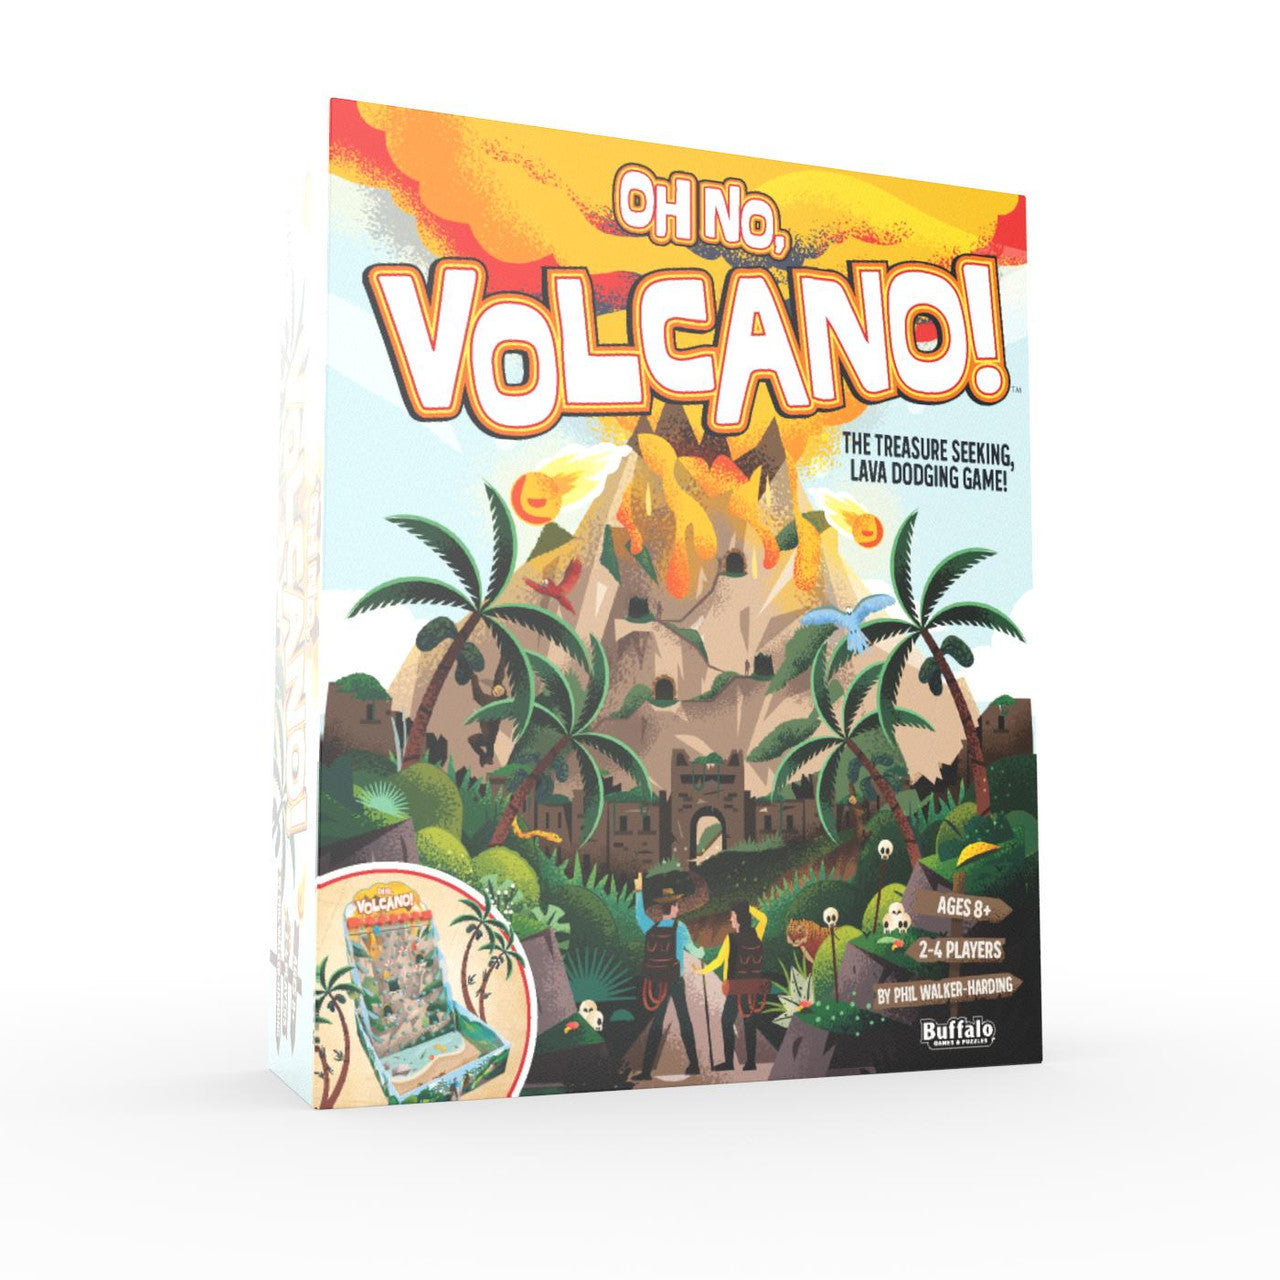 Oh No, Volcano!